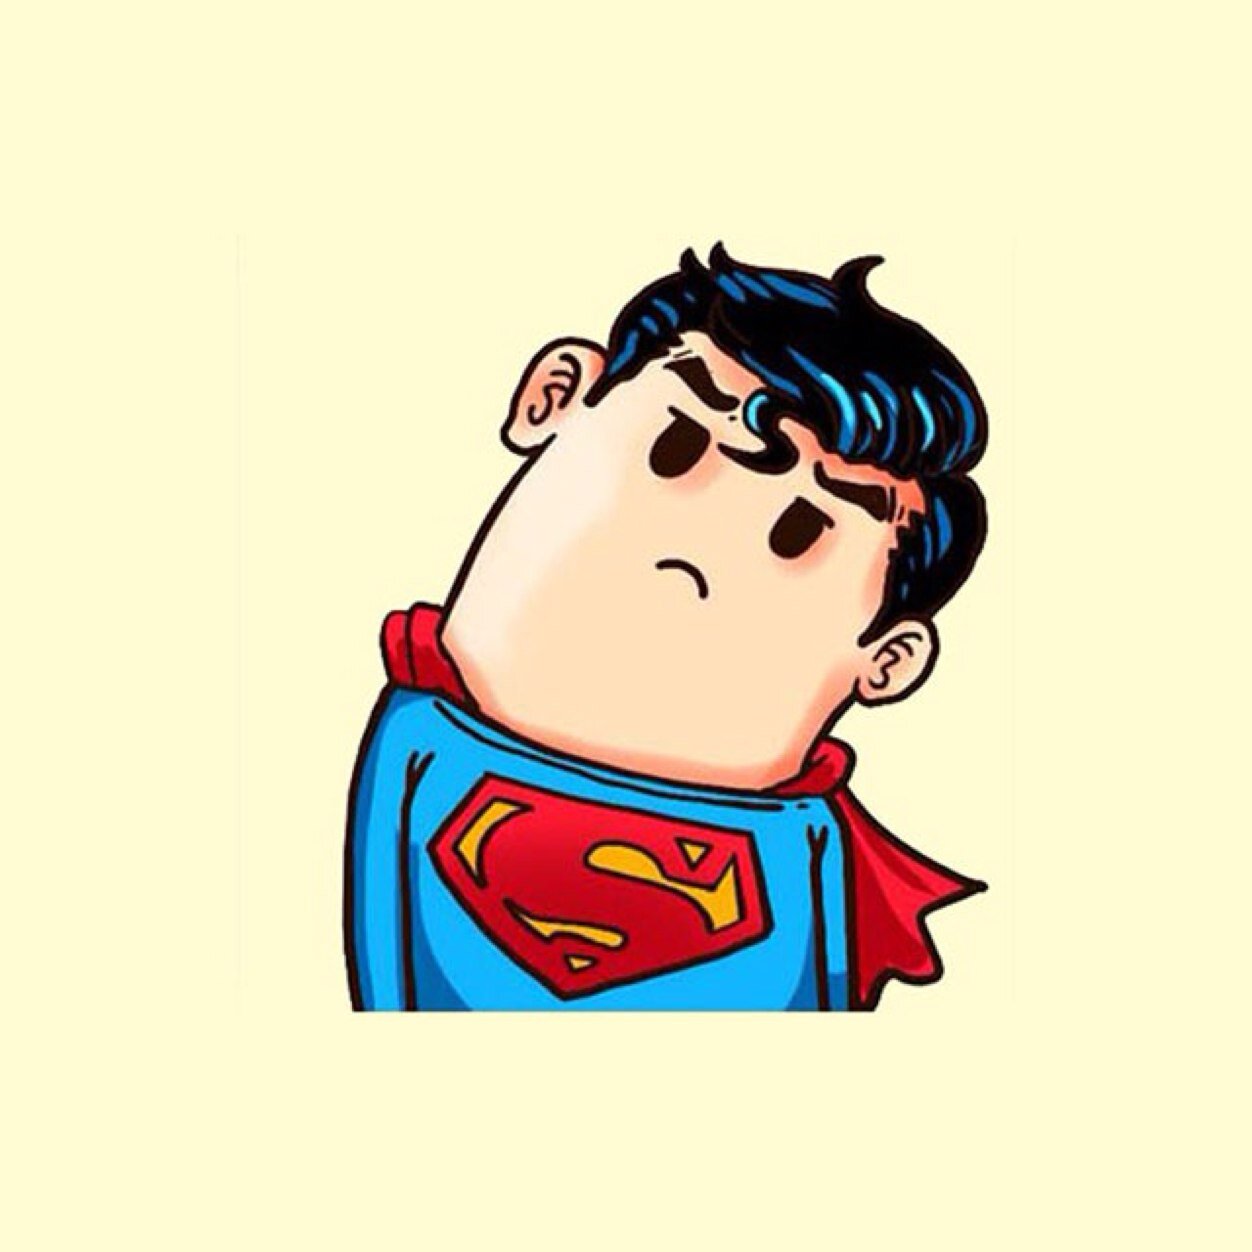 Hình ảnh Phim Hoạt Hình Siêu Nhân Cậu Bé Dễ Thương Hoạt Hình Vẽ Tay Nhân  Vật Phiên Bản Q PNG  Superman Hoa Văn Trang Trí Phim Hoạt Hình Vẽ Tay